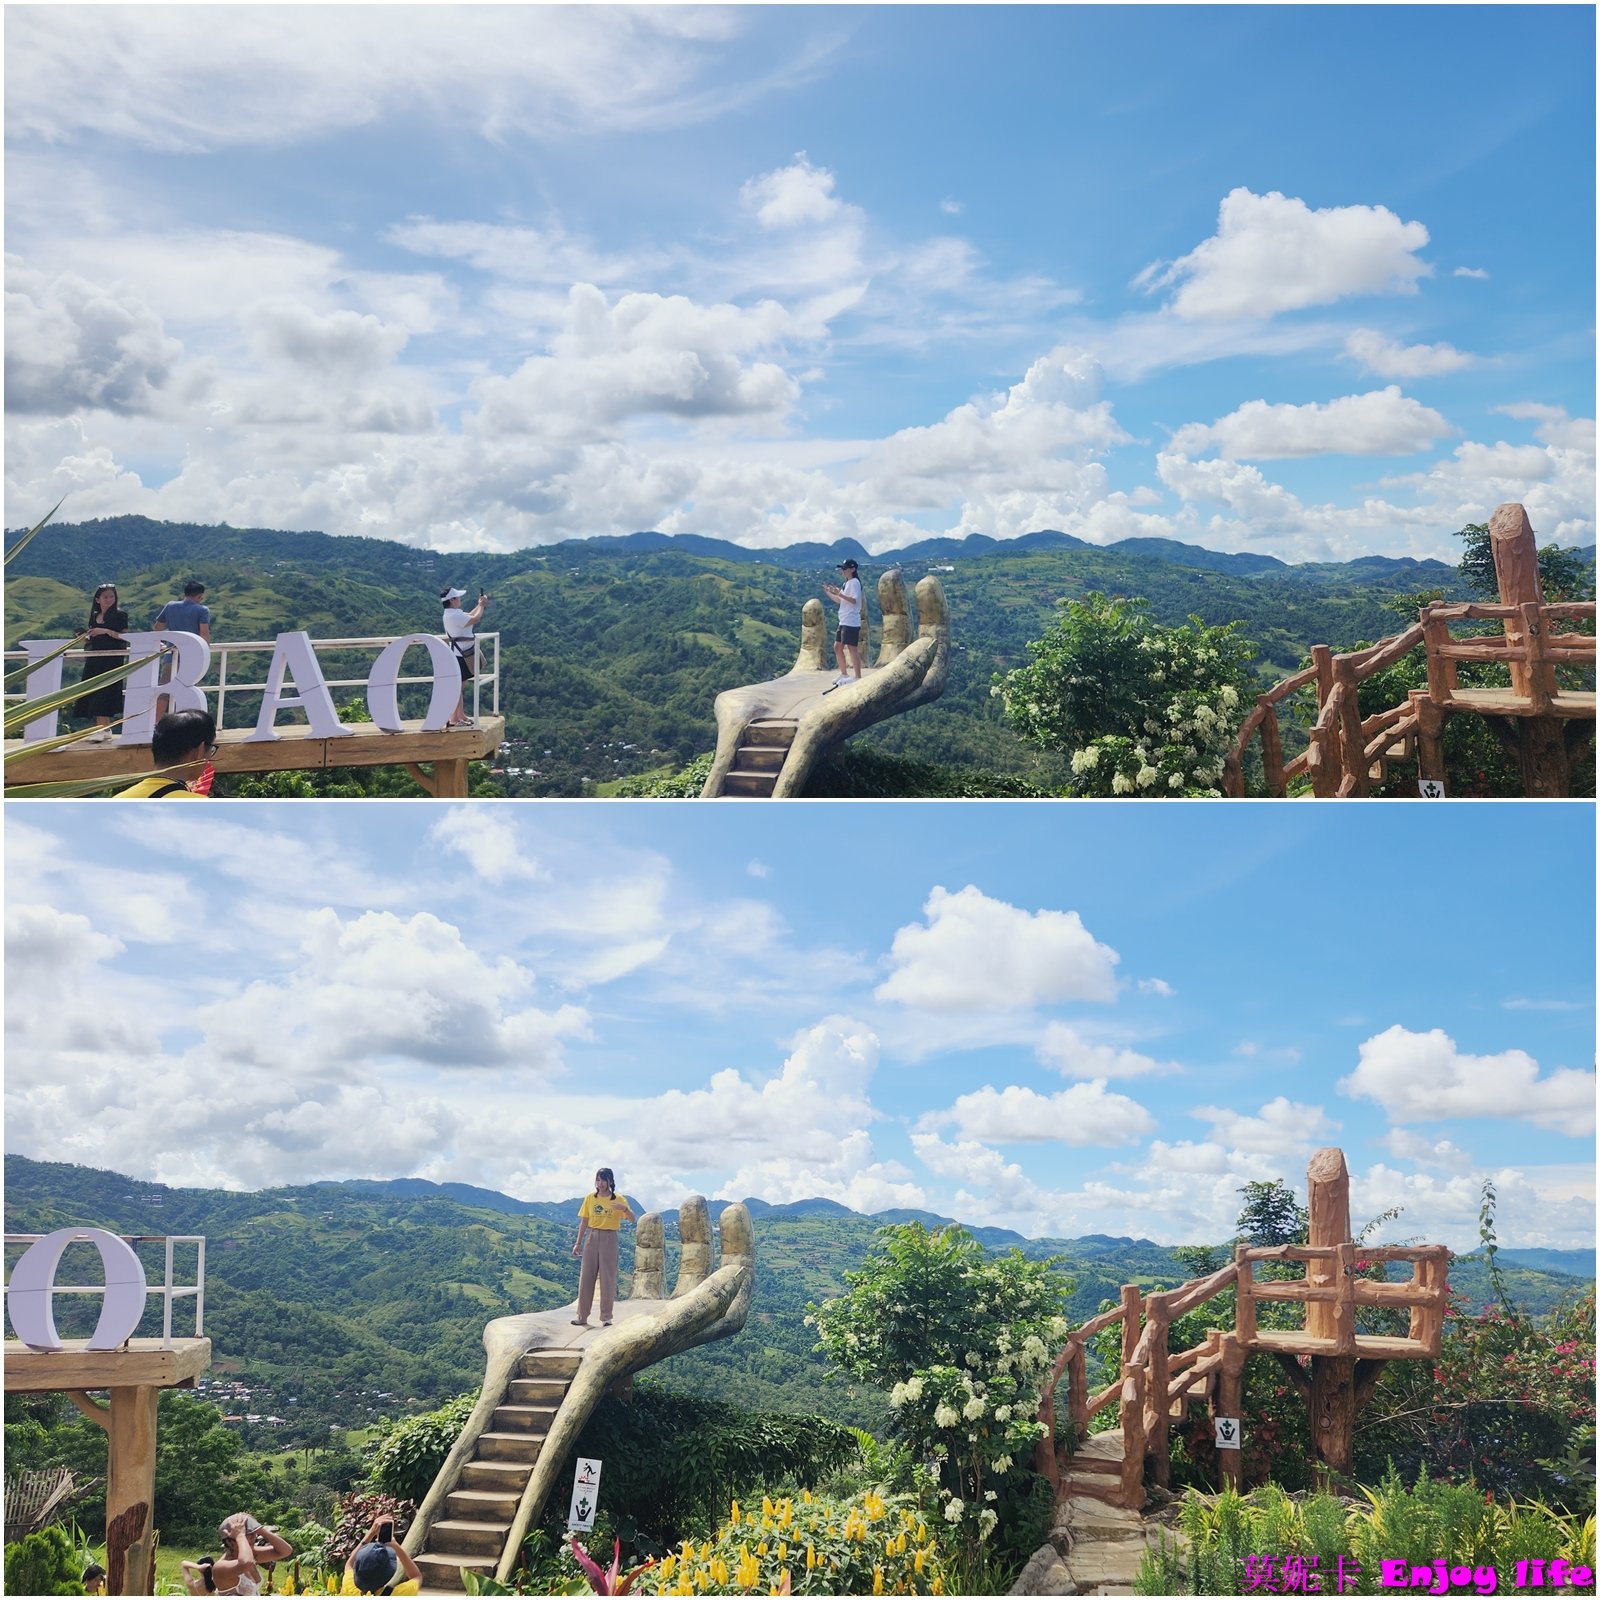 【宿霧景點】*Sirao Pictorial Garden巨手空中花園*，網美戶外超好拍照景點，爬上巨大手掌俯瞰整個山景，拍起照來好壯觀漂亮!!!